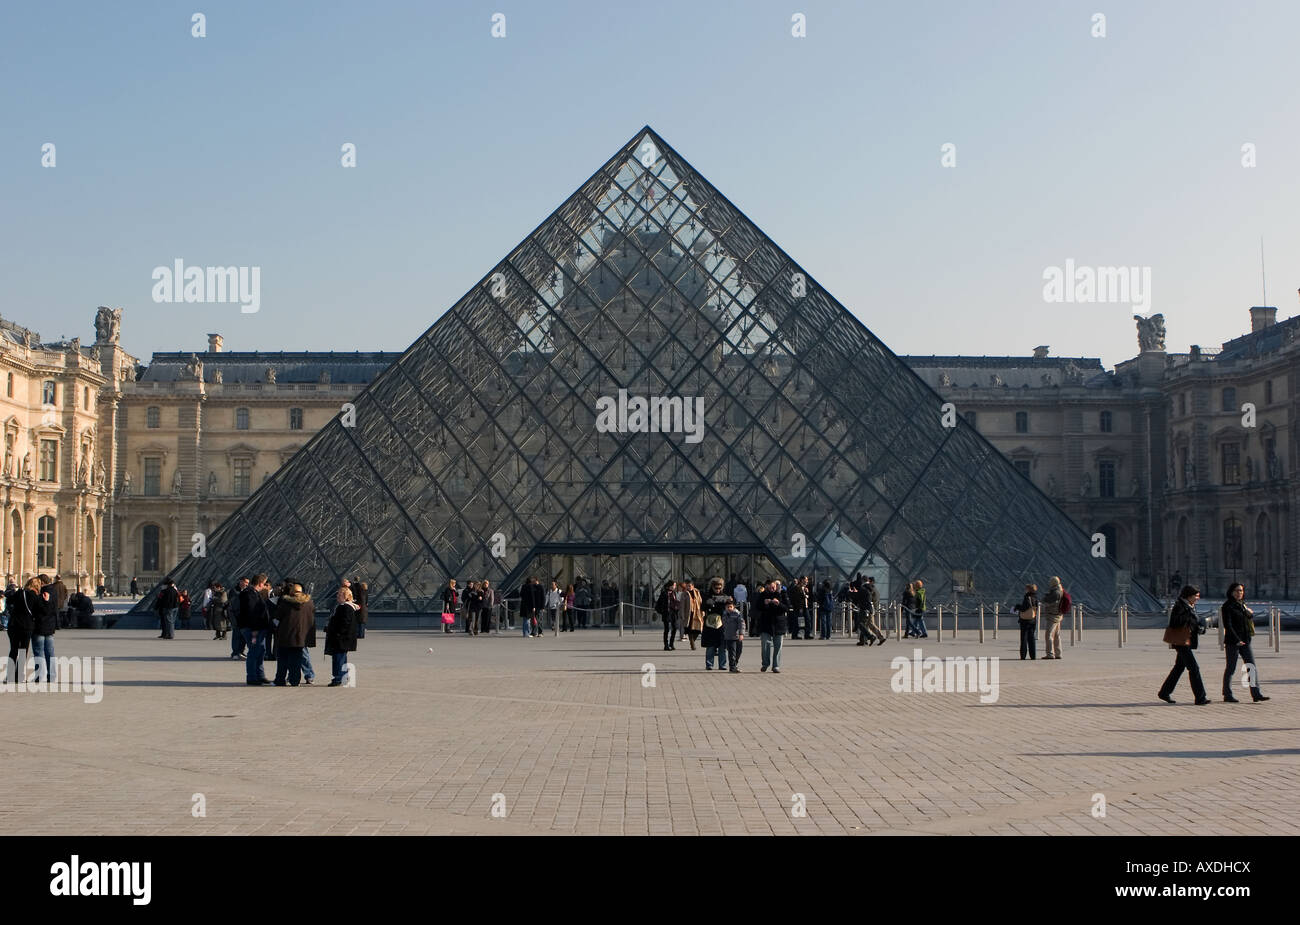 La pyramide de verre conçu par I.M. Pei qui est au-dessus de l'entrée au Musée du Louvre dans le centre de Paris, France Banque D'Images